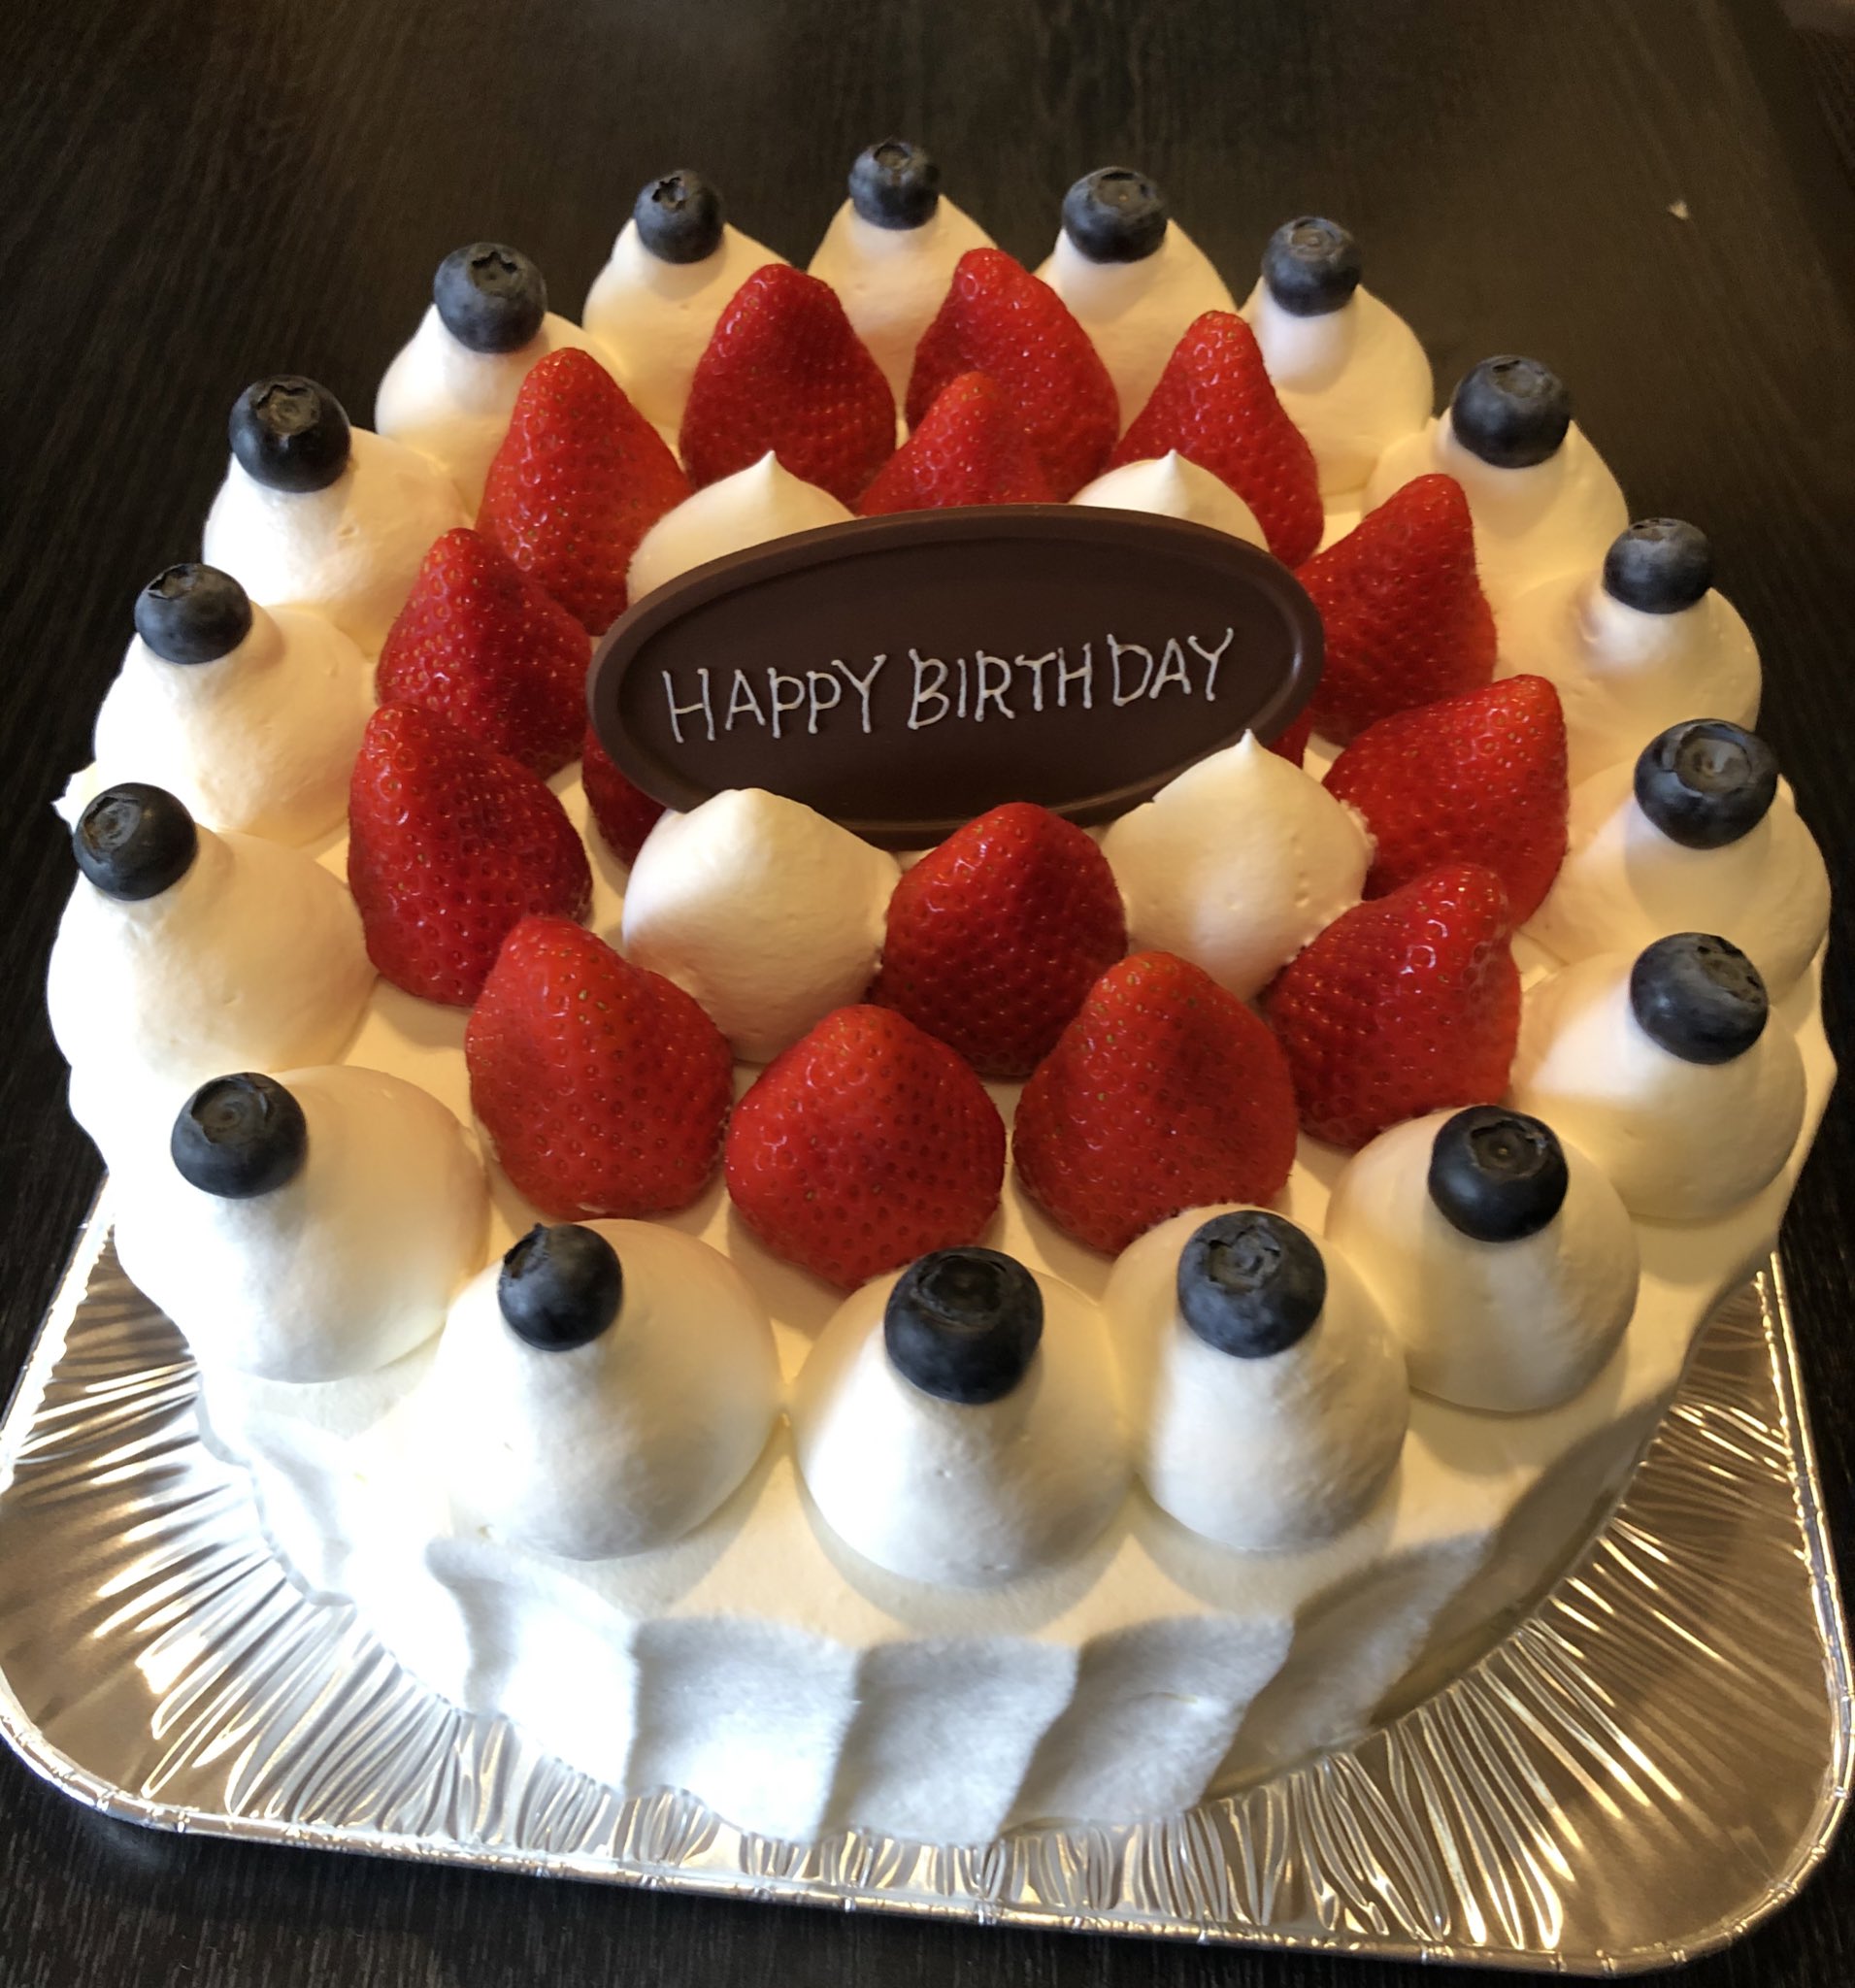 Moko Twitterren ハーブスの本店限定 今月は クイーン オブ ケーキ お世話になっている方の誕生日のお祝いに買いましたがめっちゃ美味い 本当にクイーンだわ T Co E5wq5wbte6 Twitter